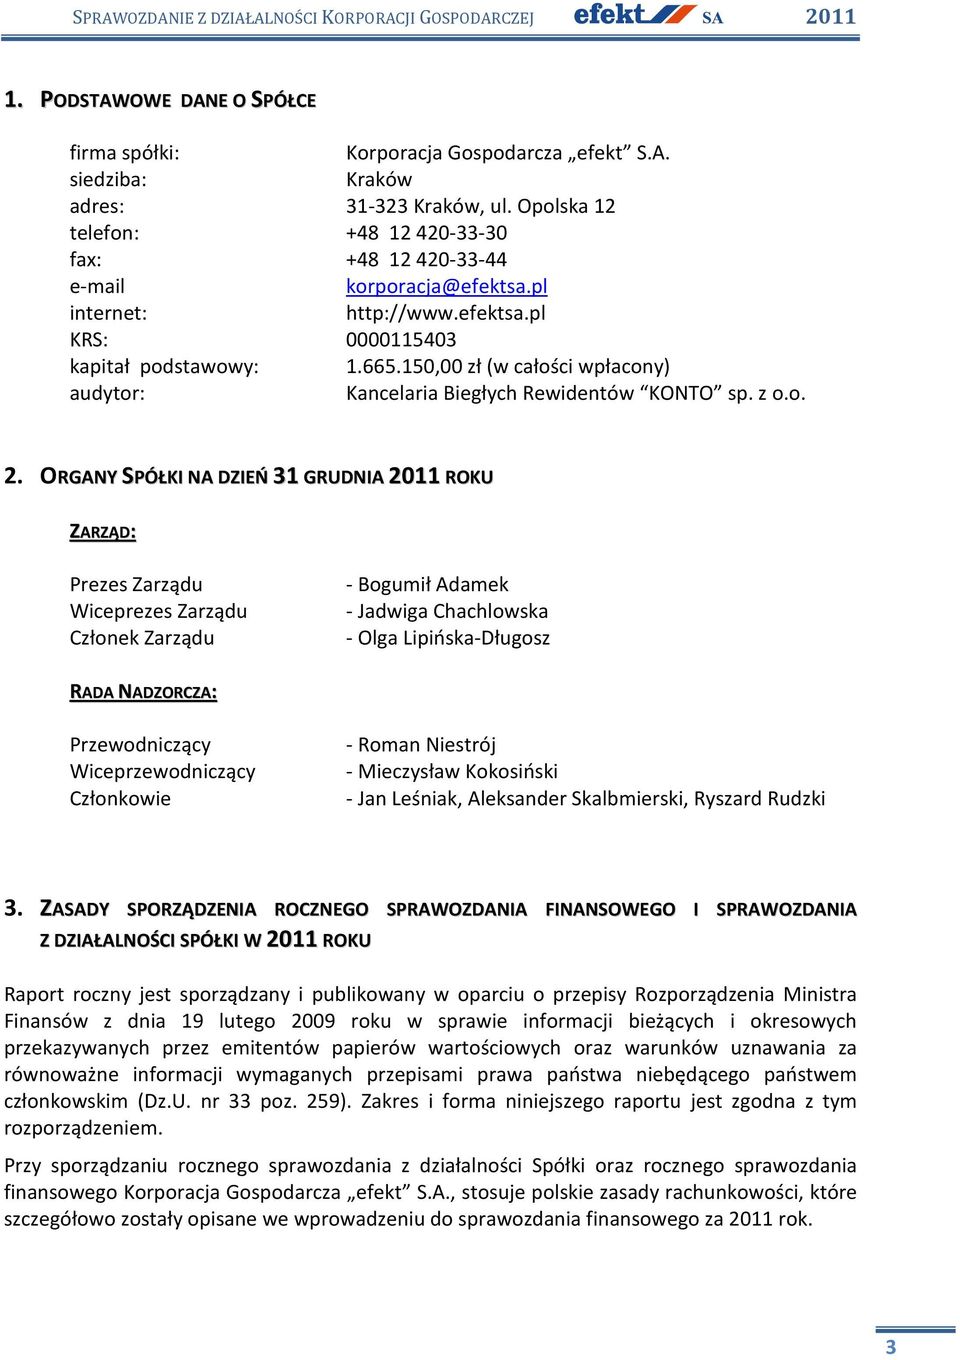 150,00 zł (w całości wpłacony) audytor: Kancelaria Biegłych Rewidentów KONTO sp. z o.o. 2.